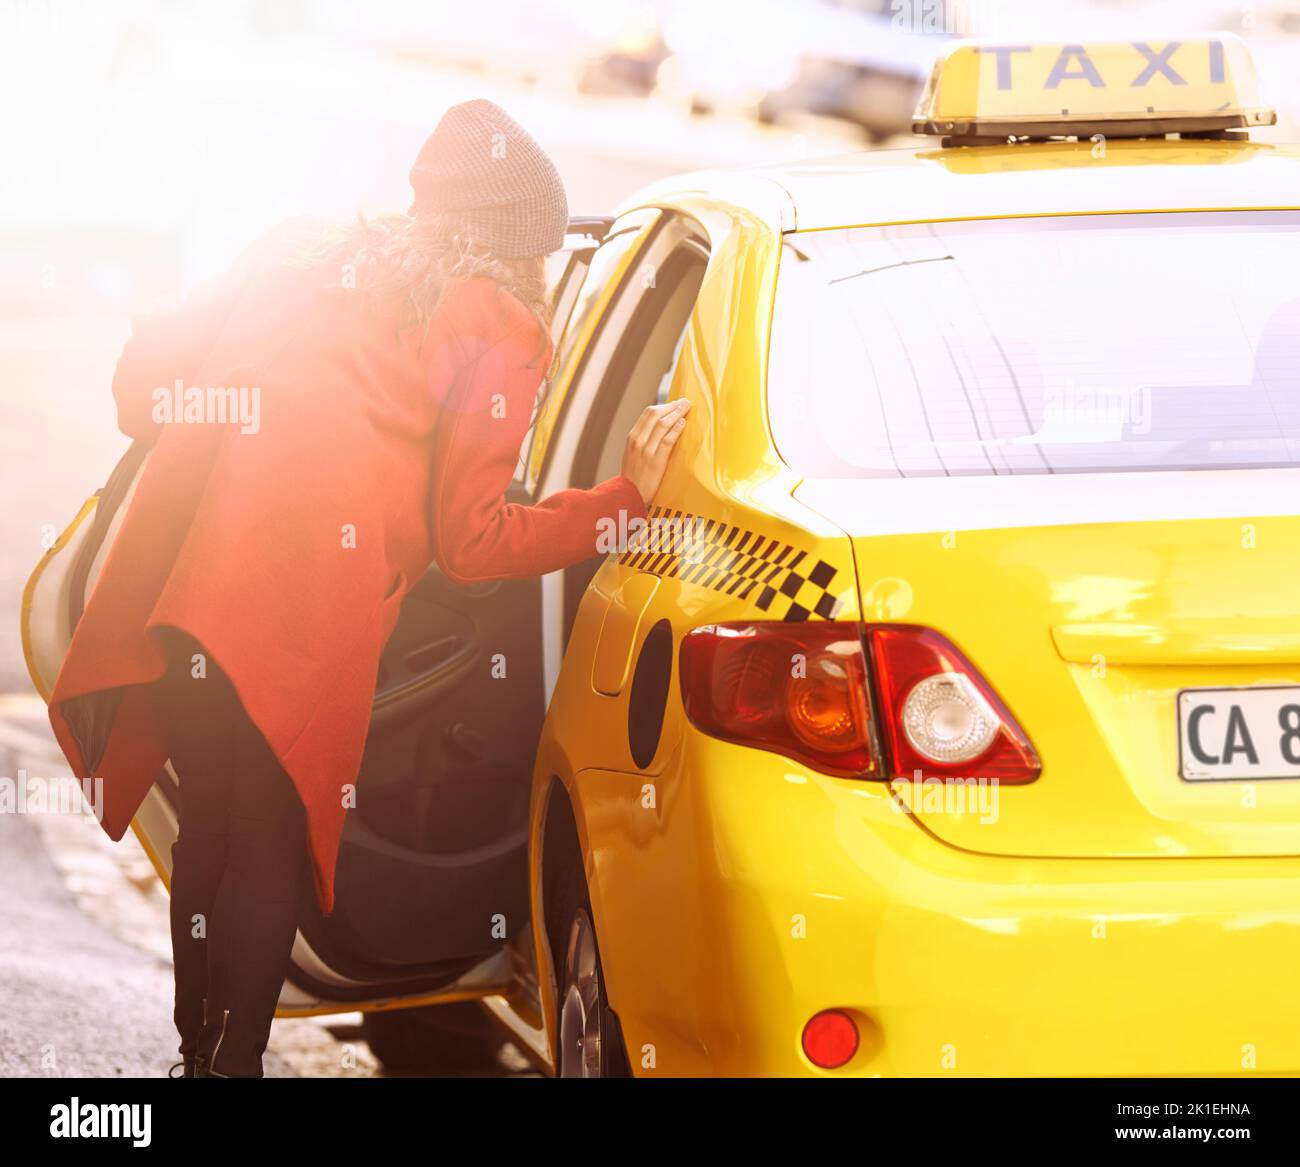 Taksi sign fotografías e imágenes de alta resolución - Página 2 - Alamy